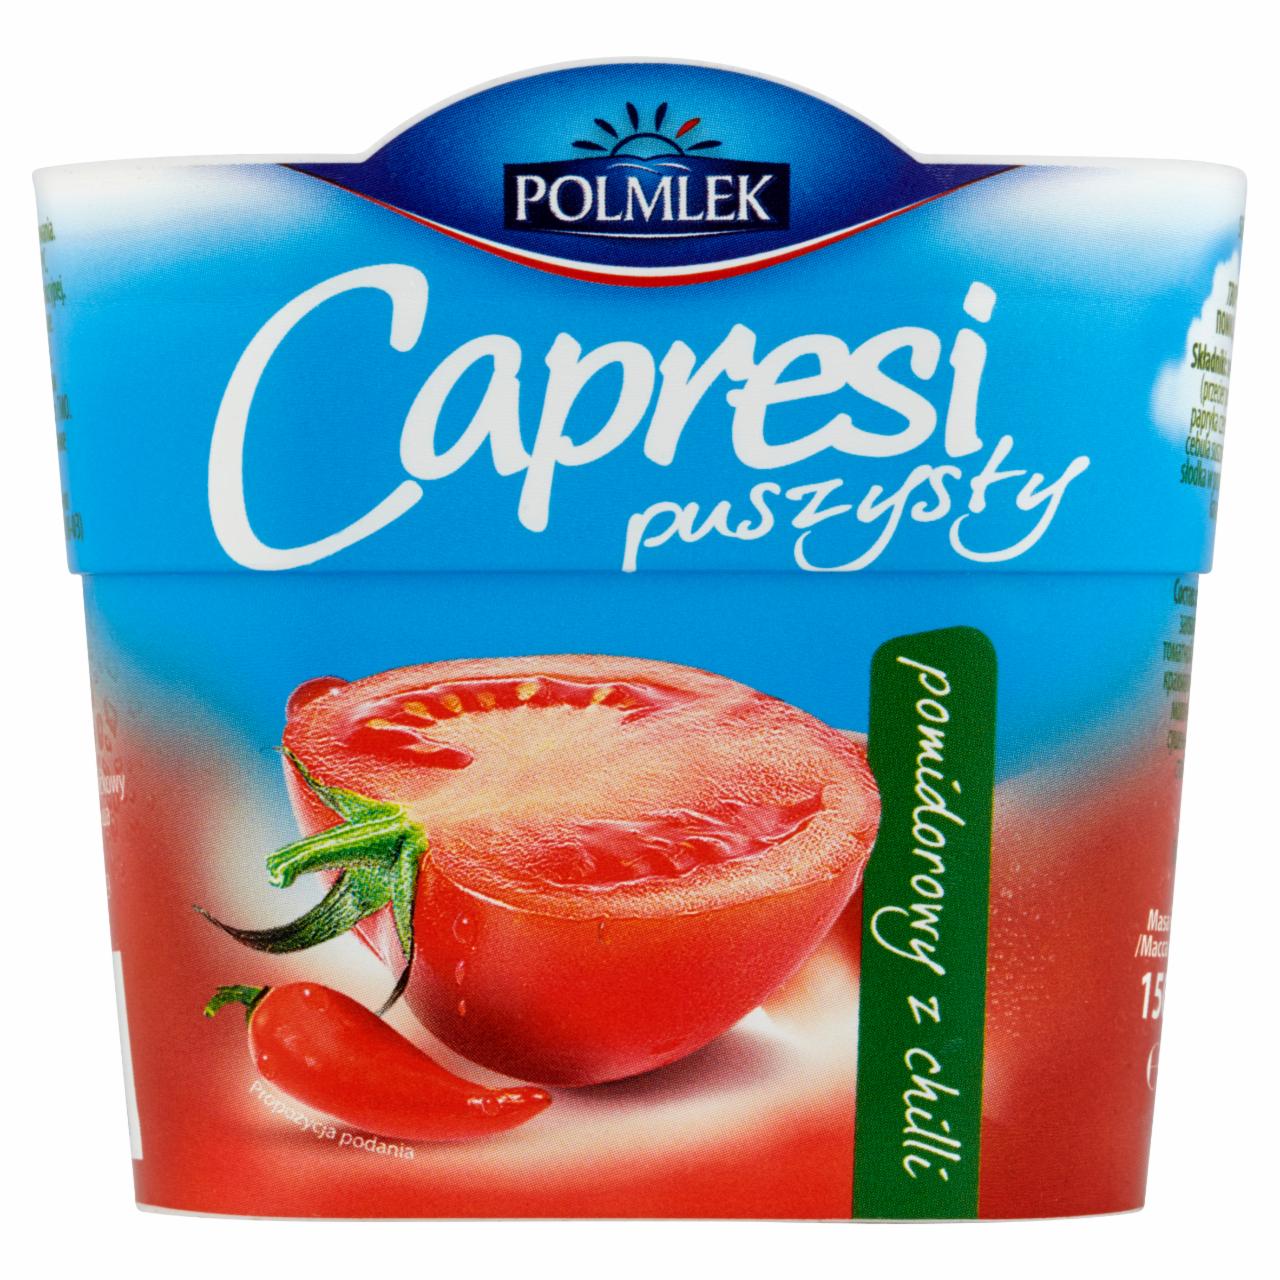 Zdjęcia - Polmlek Capresi puszysty pomidorowy z chilli Serek twarogowy 150 g